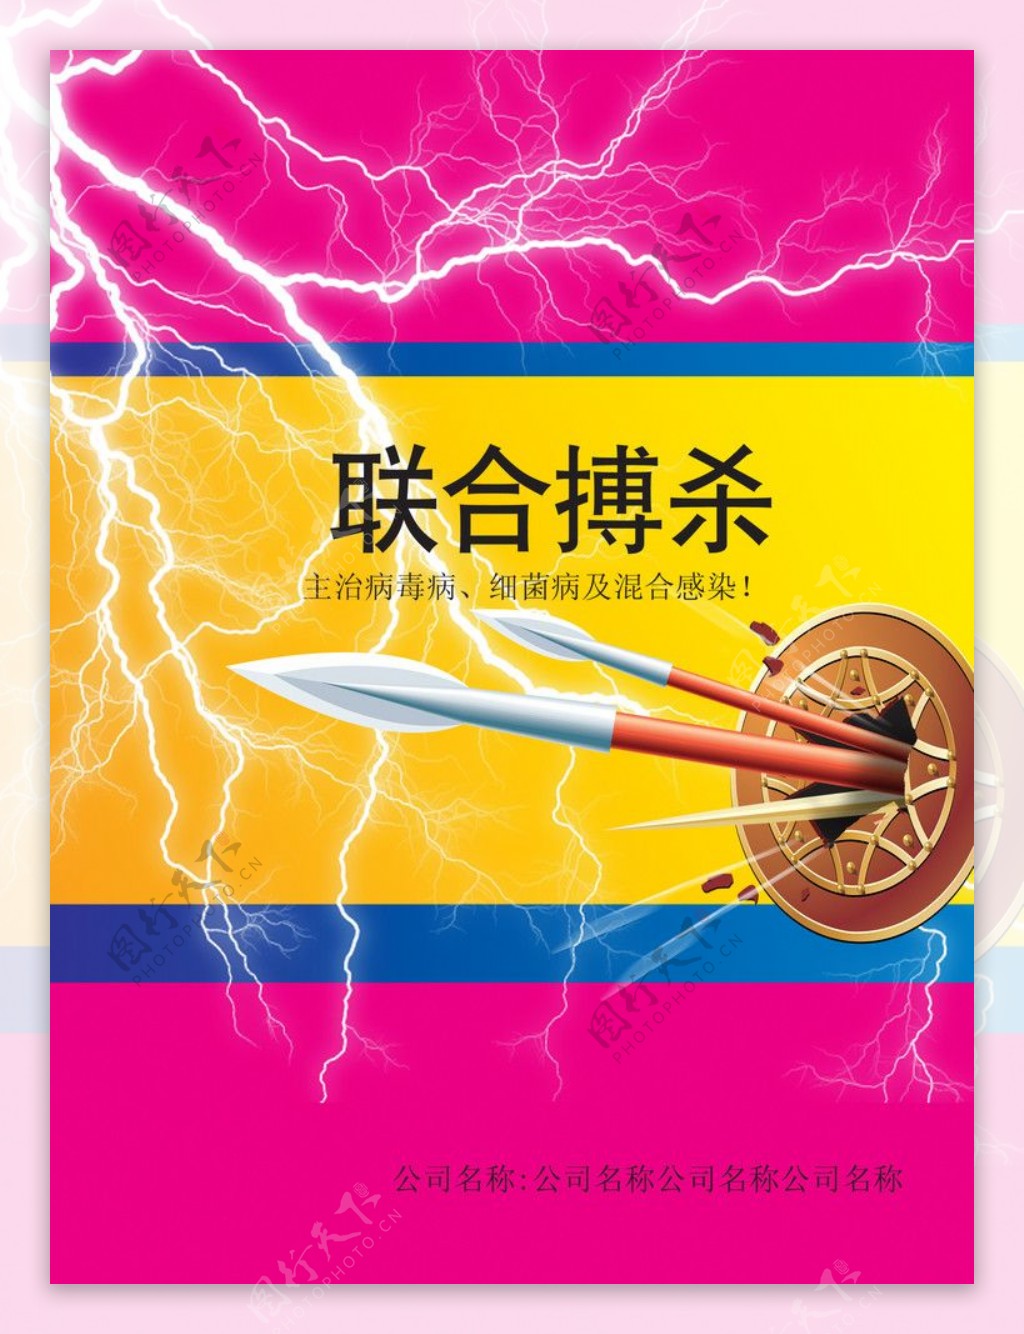 有长矛盾闪电的杀毒产品册子封面设计图片